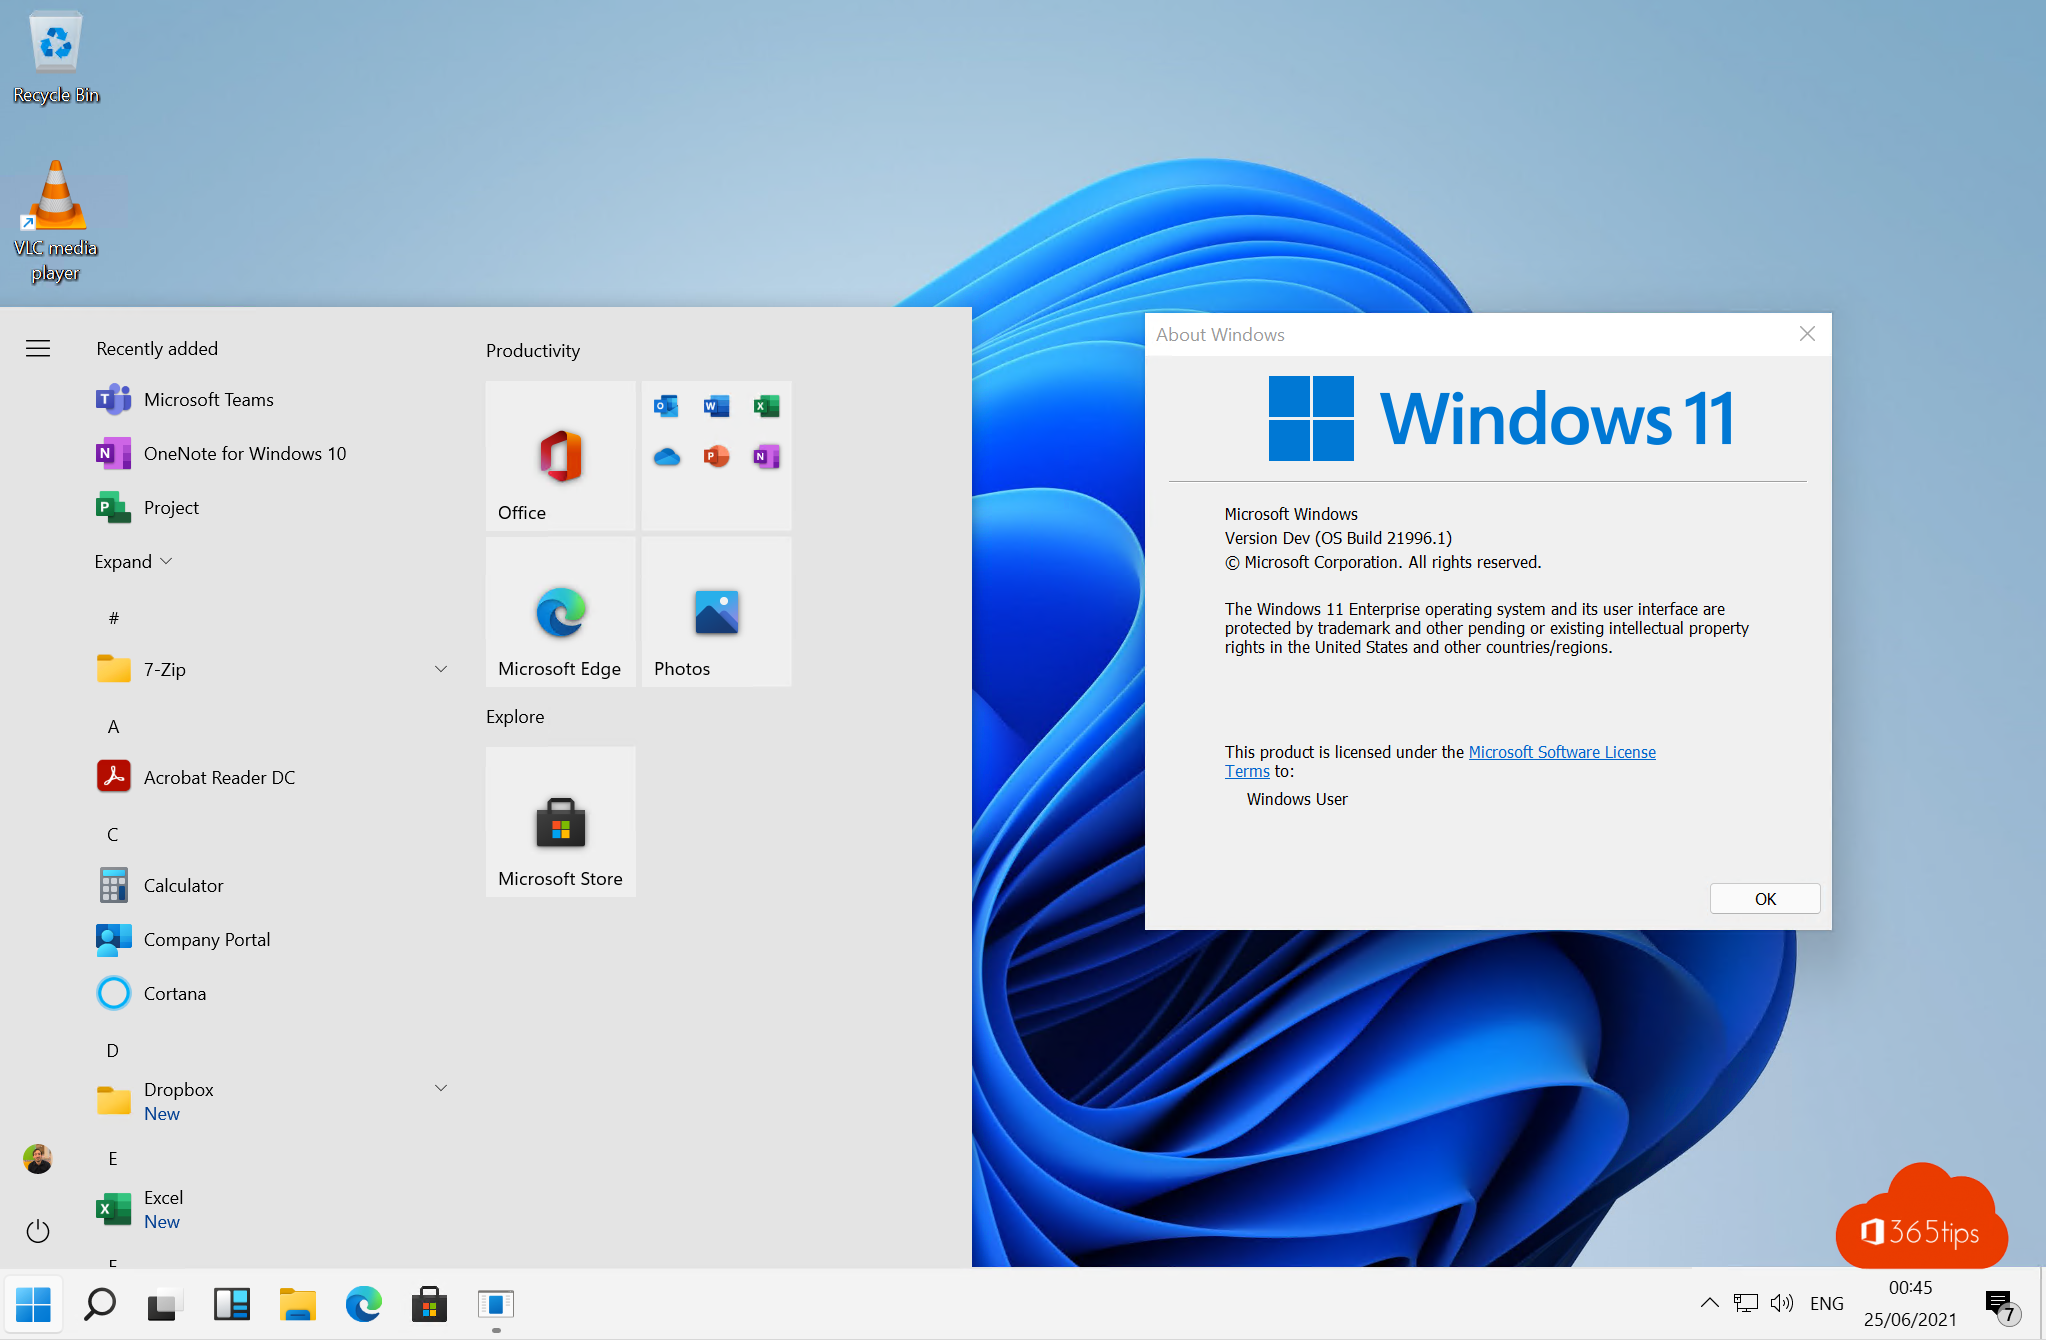 Tip: Reset Windows 11 Start menu to Windows 10